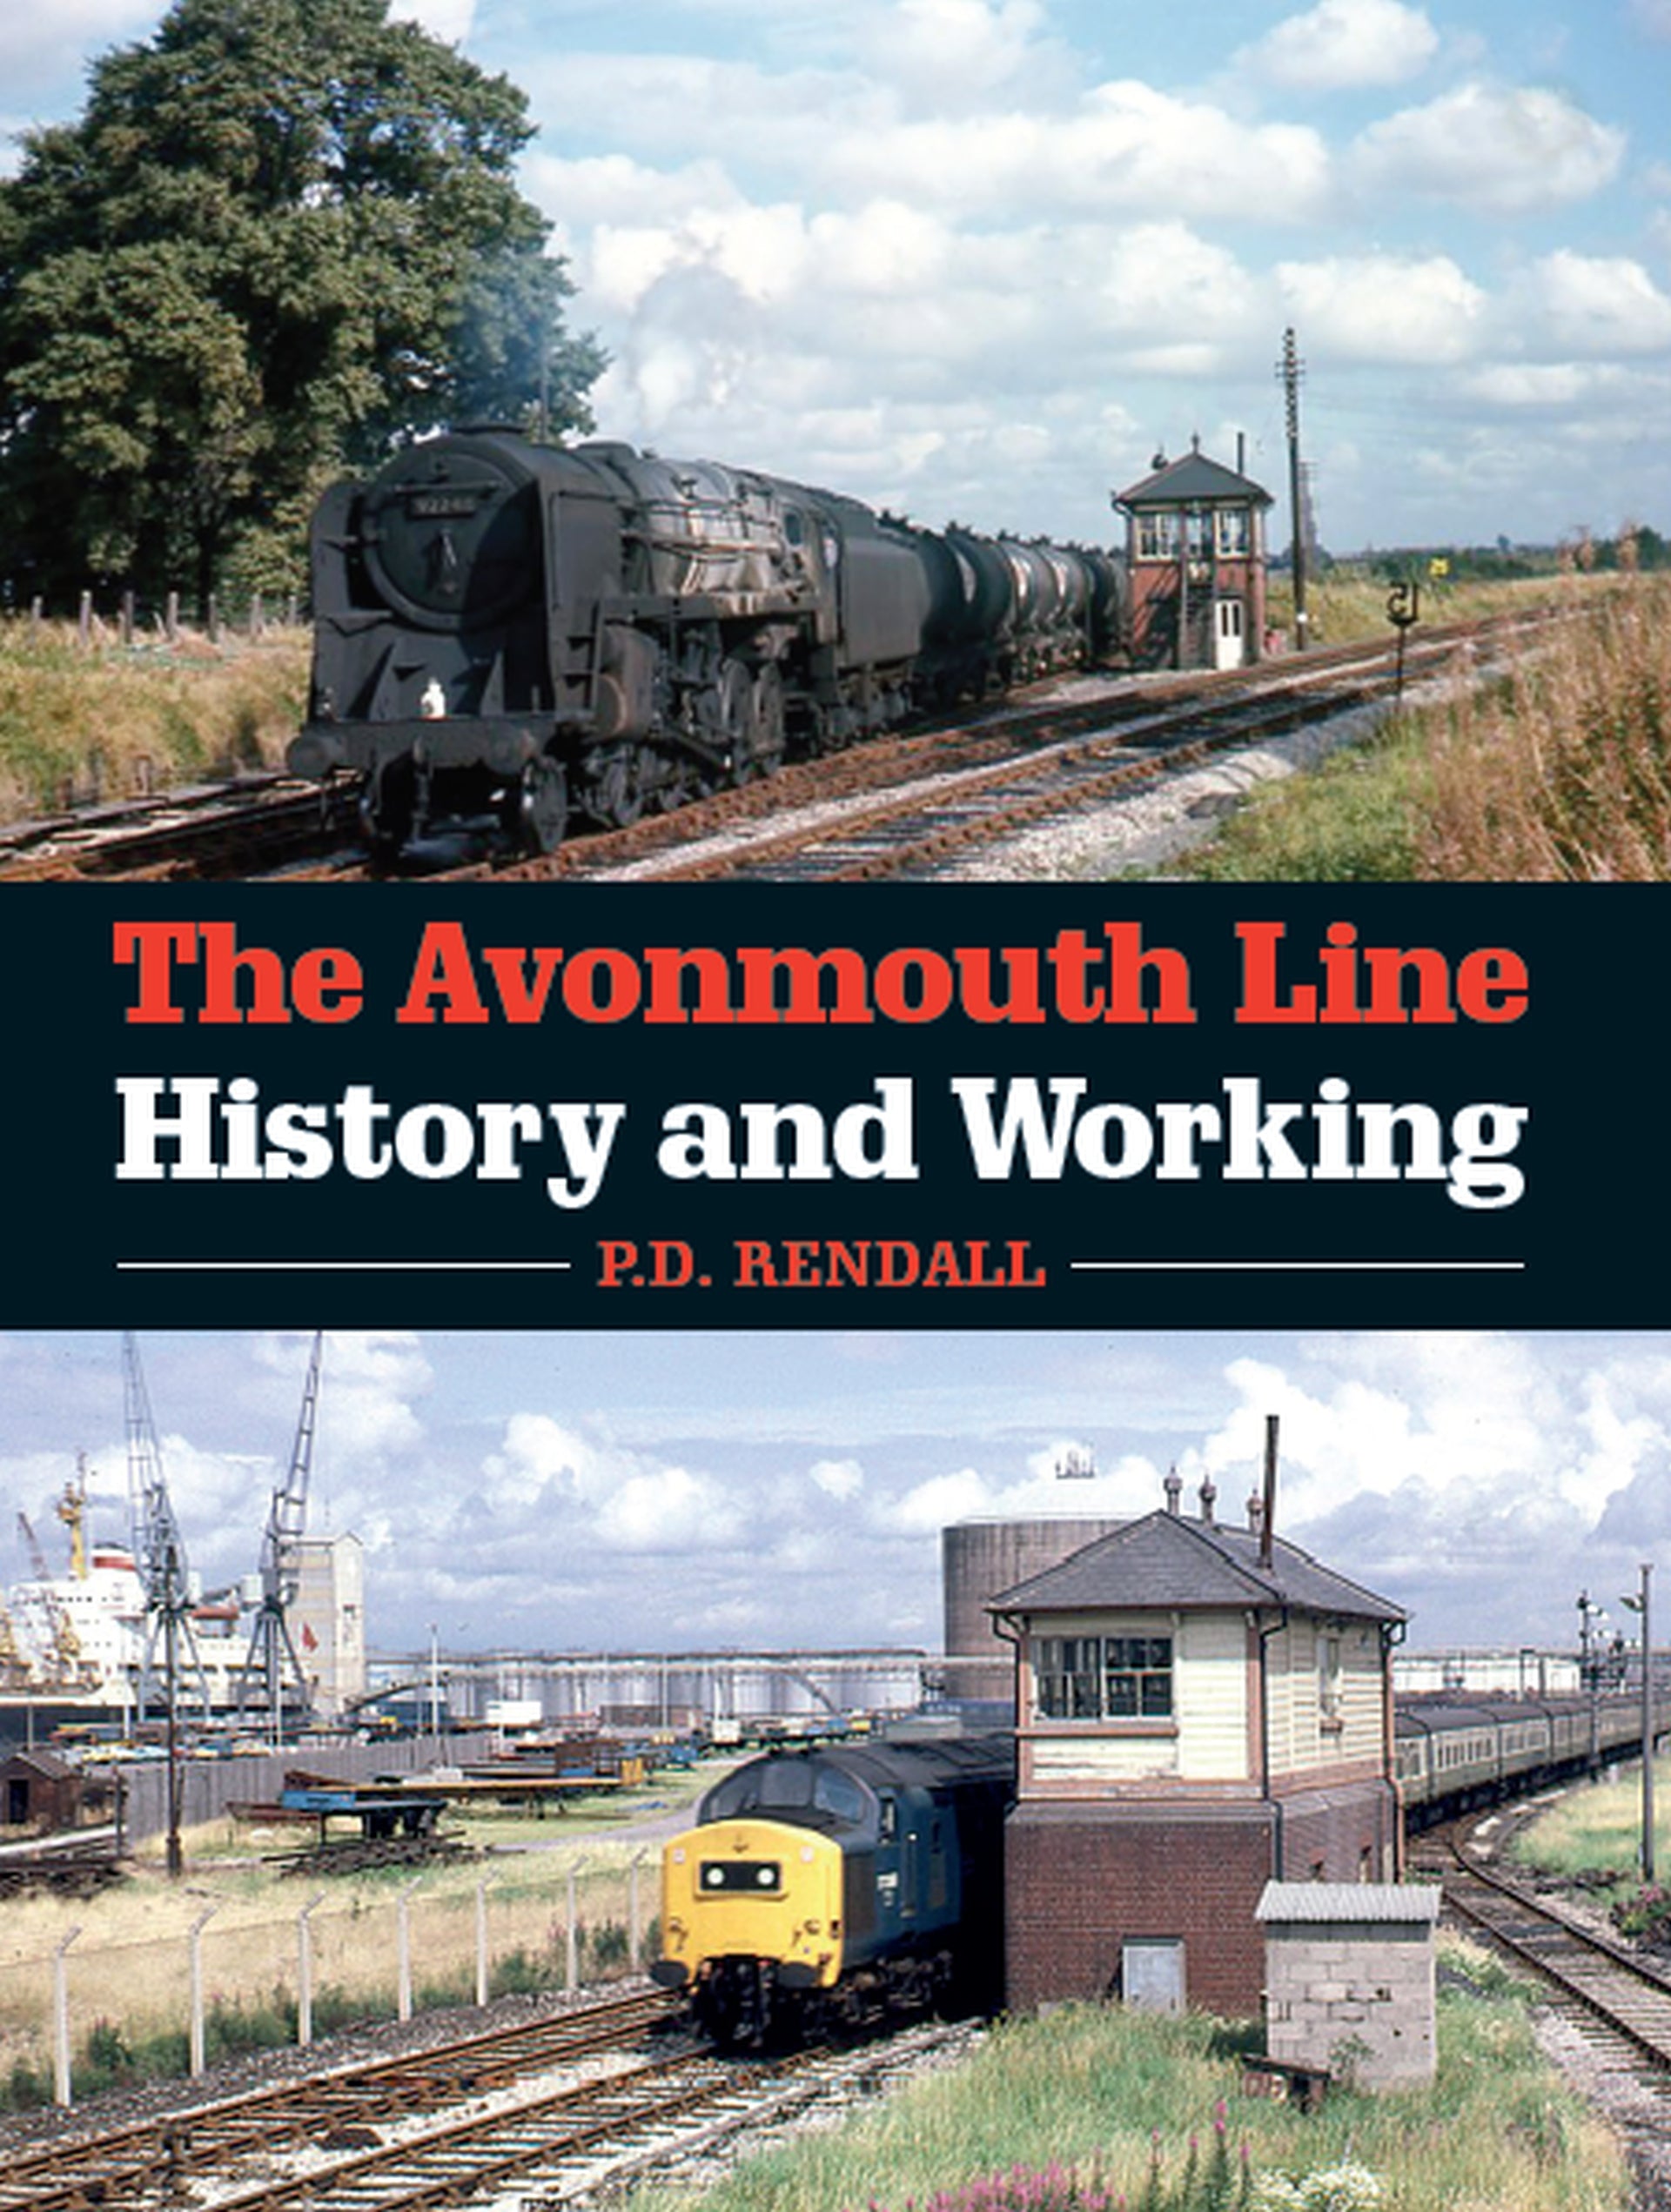 The Avonmouth Line